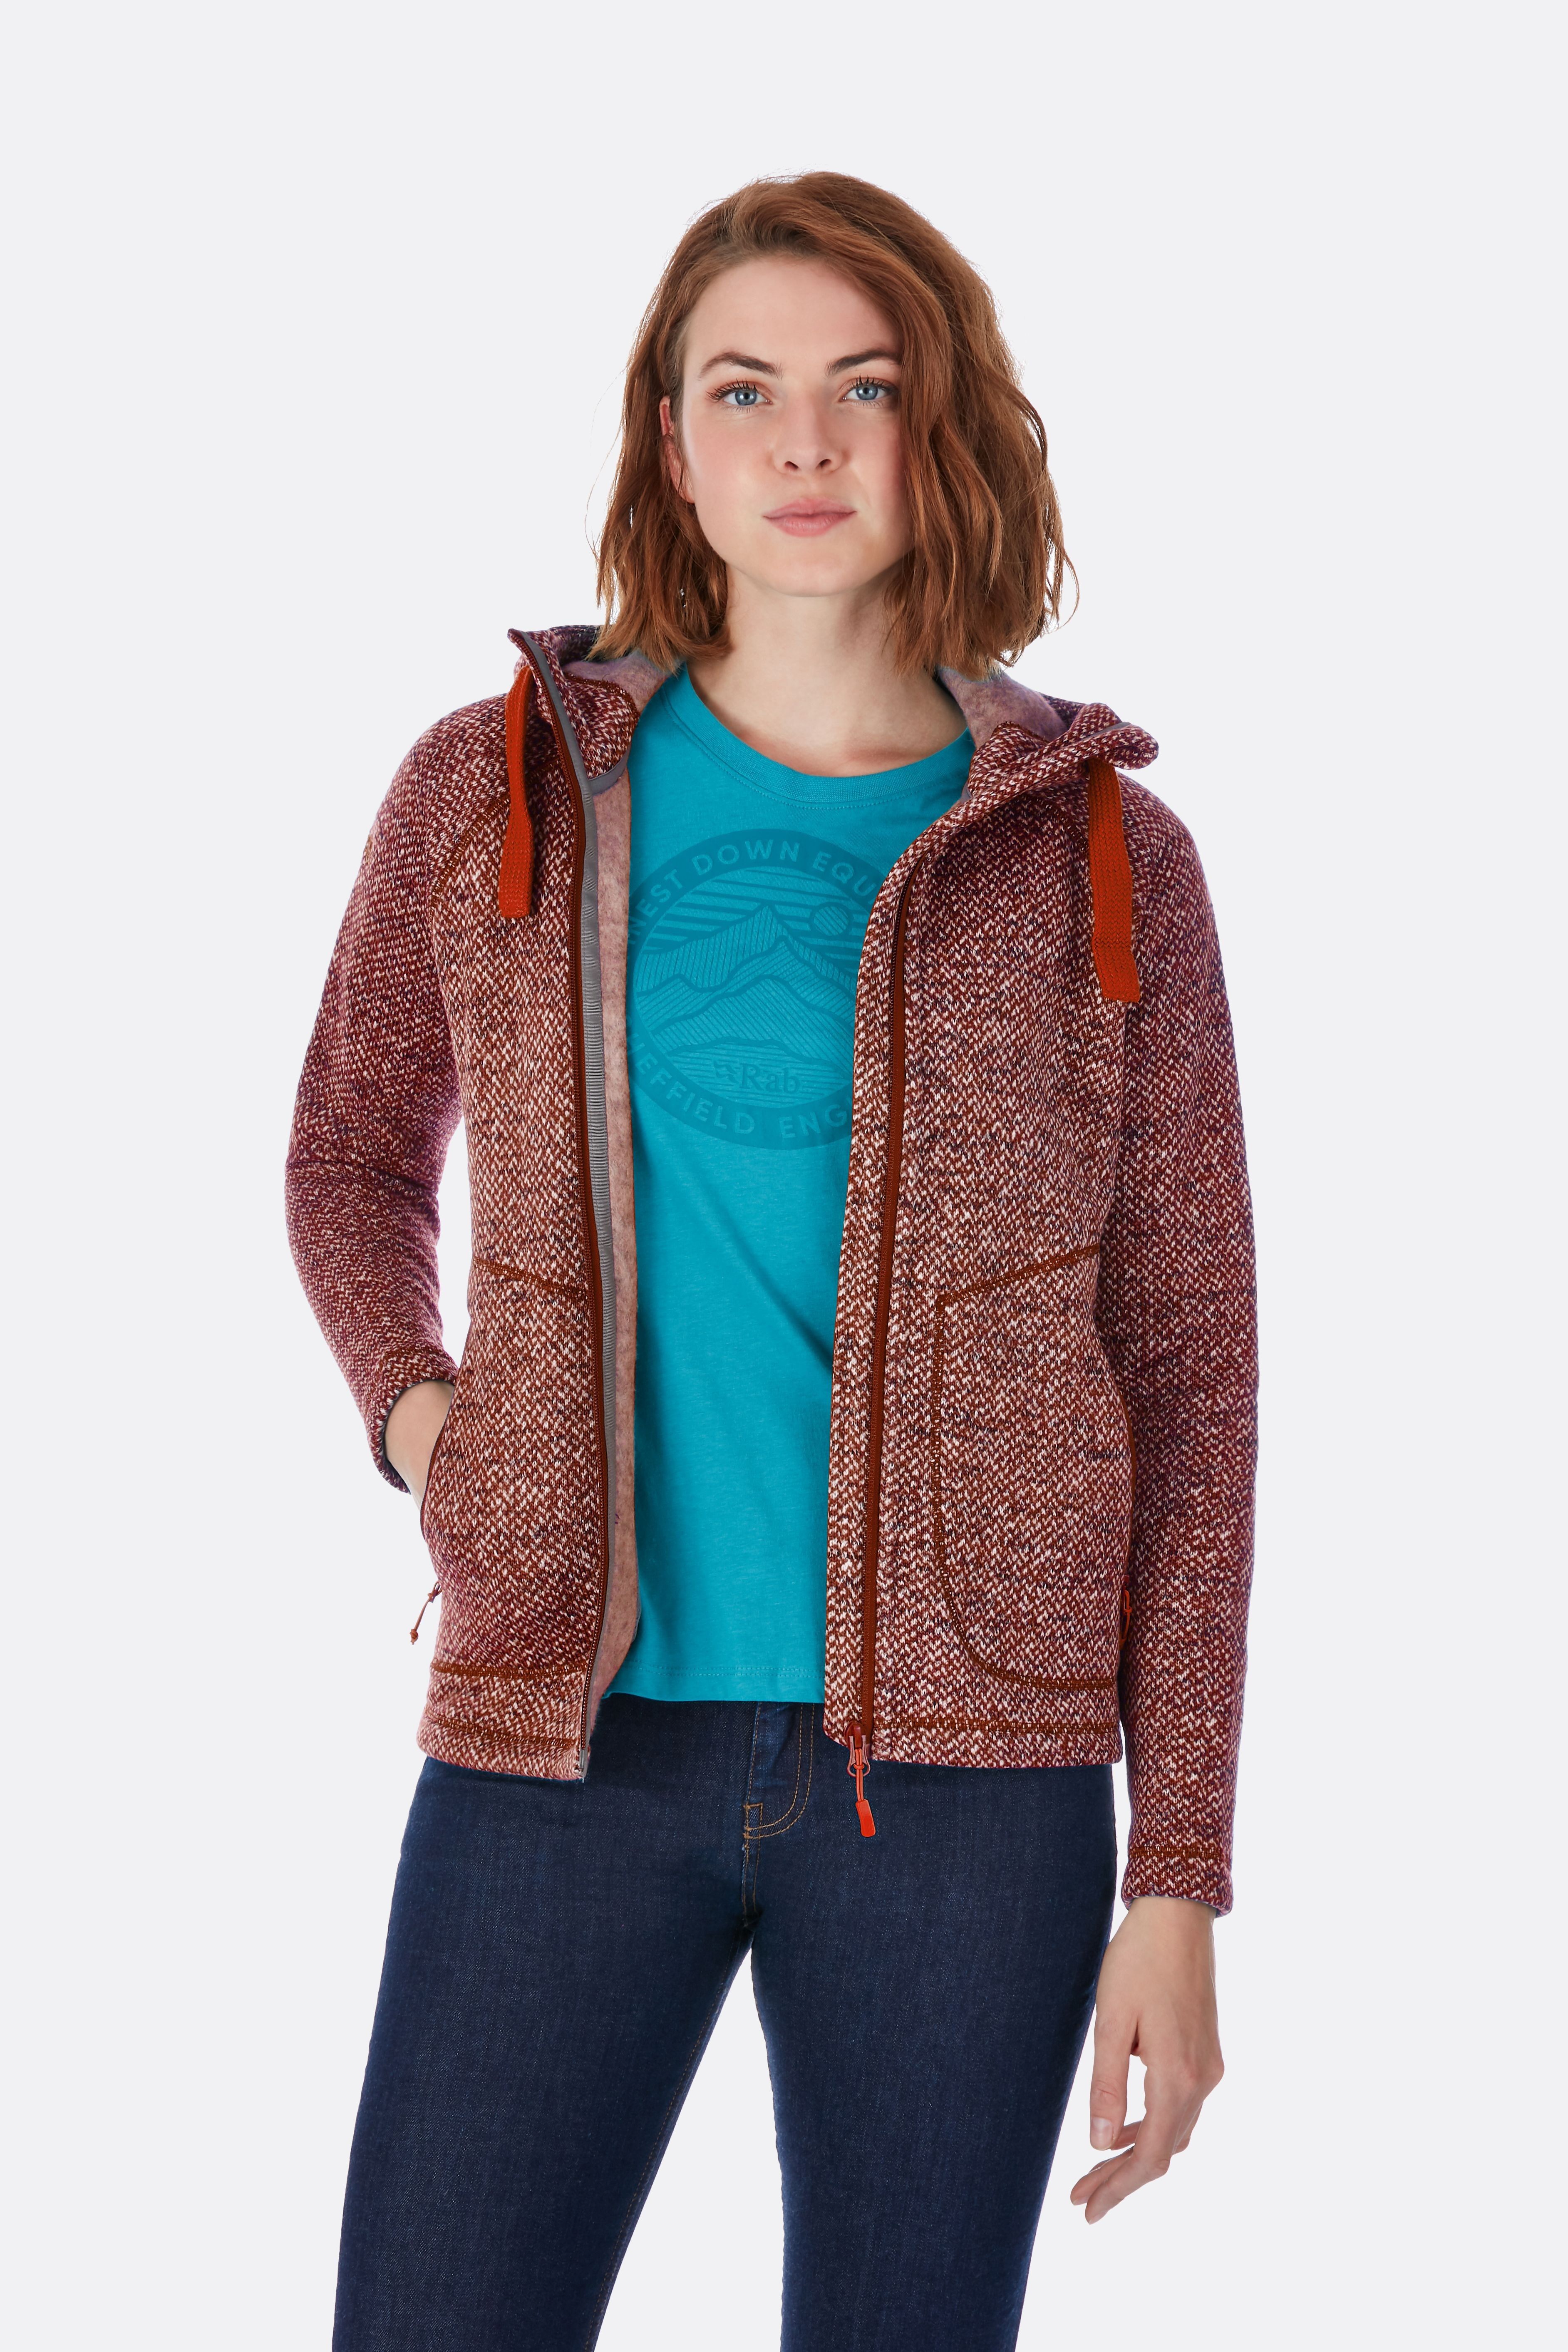 Rab Amy Hoody Women's - Fleece jacket - Women's